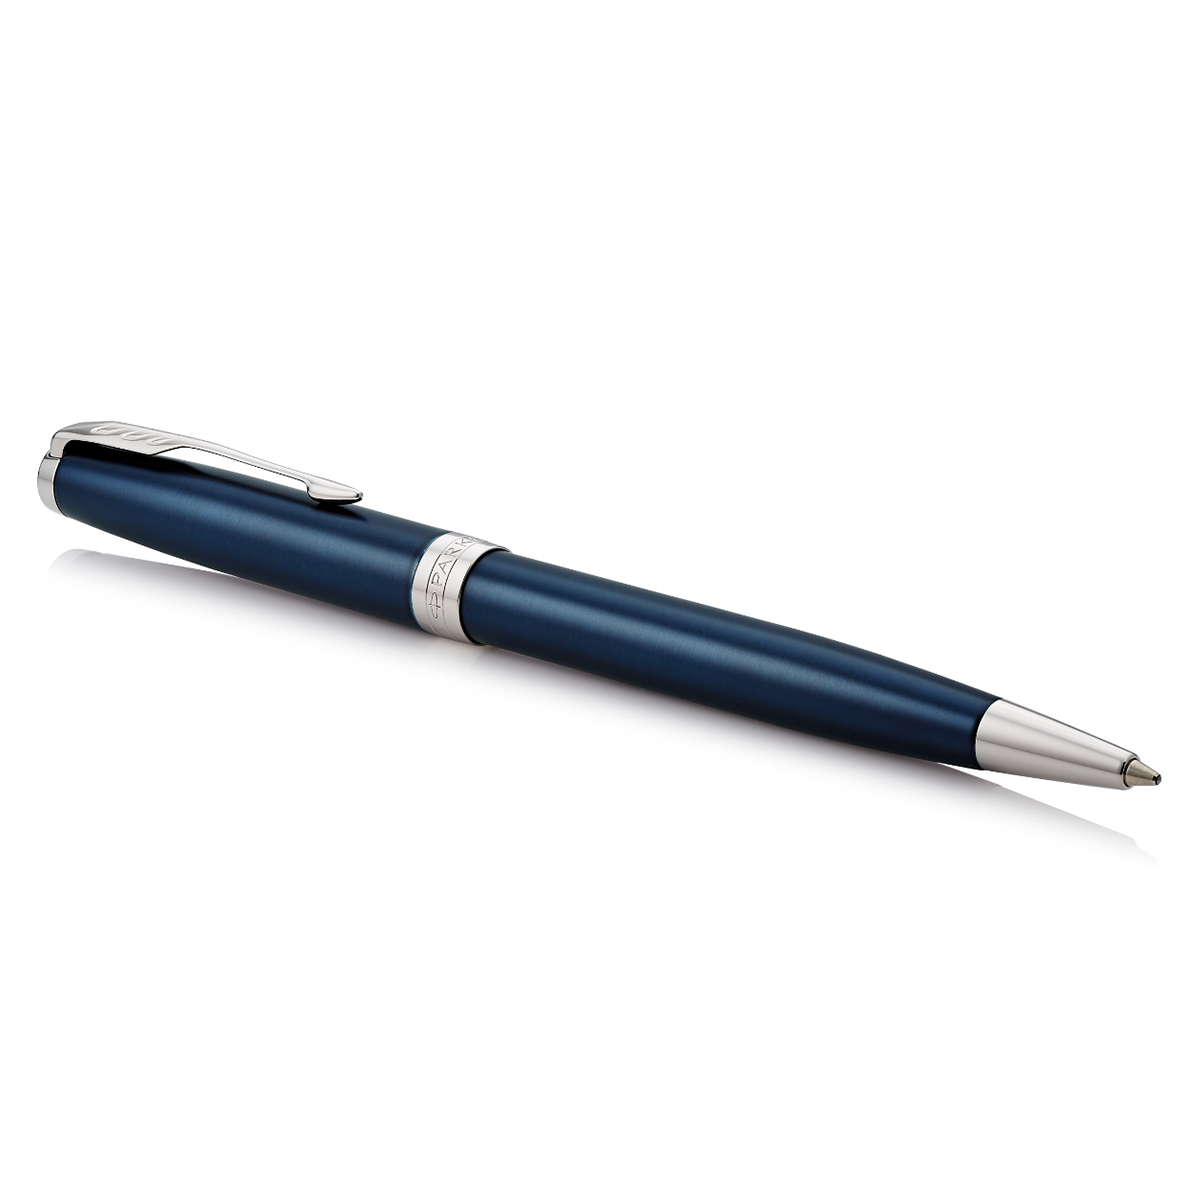 Sonnet Blue/Chrome Ballpoint in the group Pens / Fine Writing / Ballpoint Pens at Pen Store (104830)